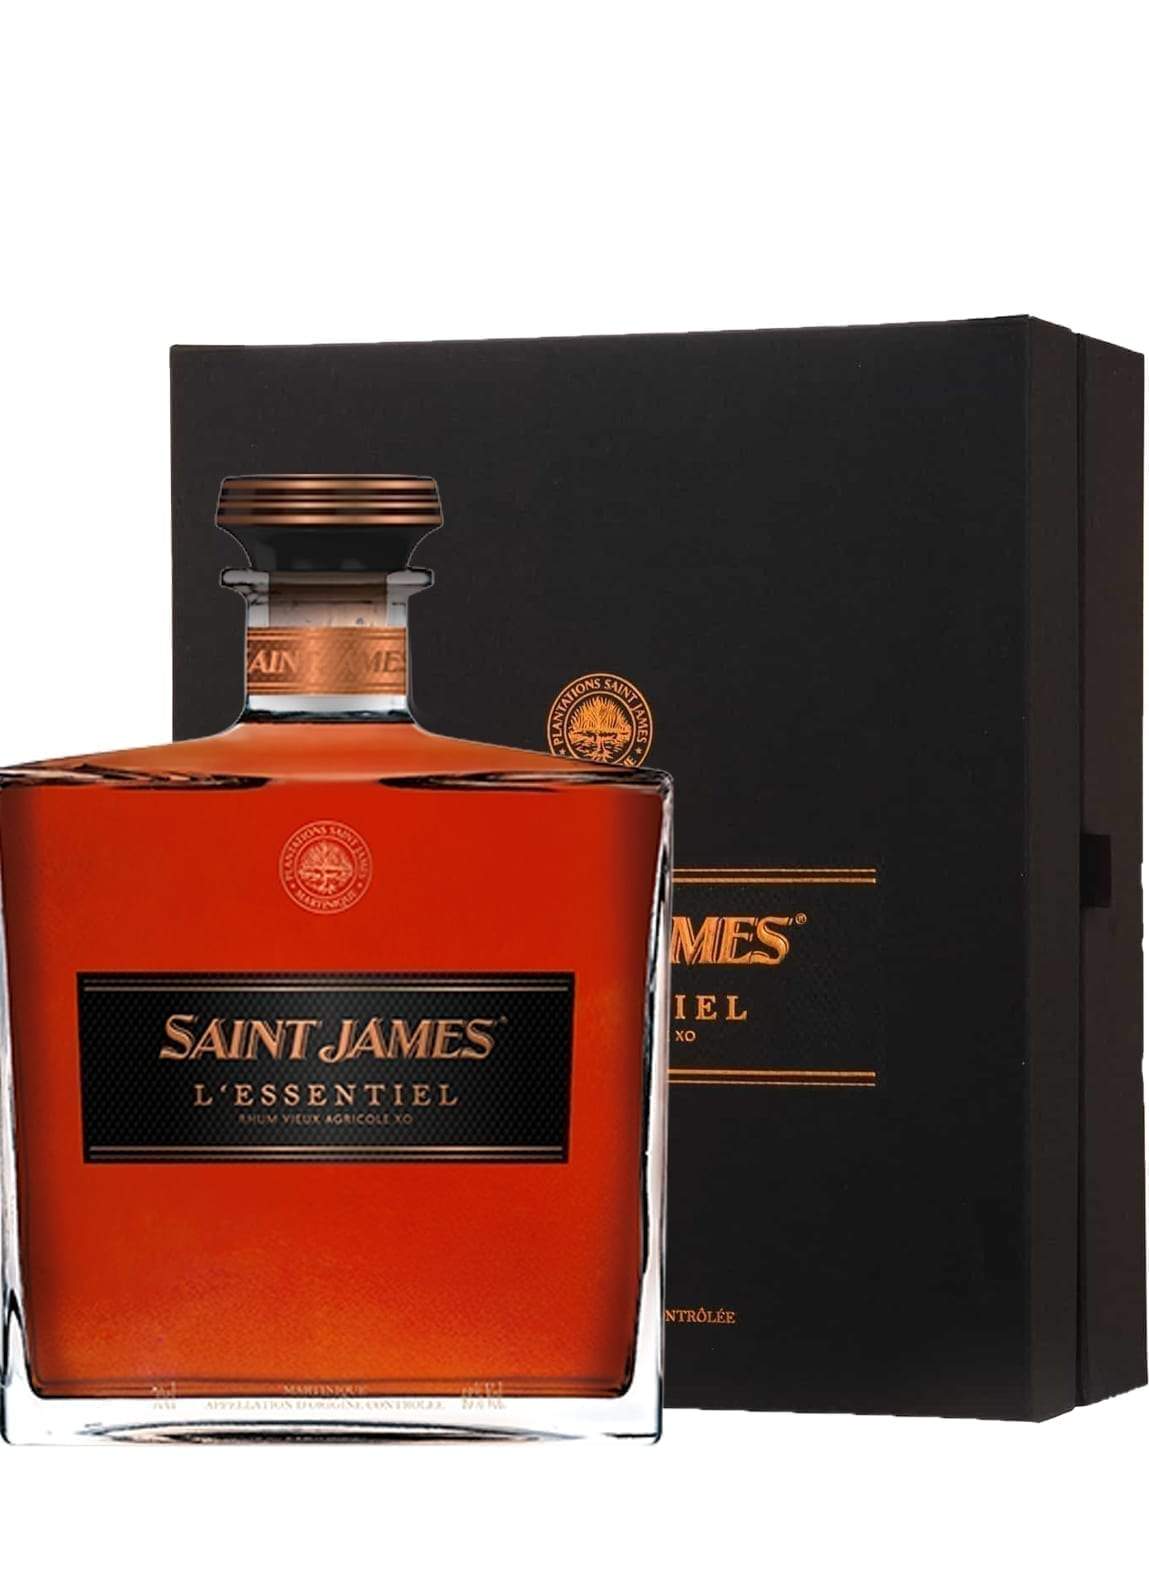 St James Rum l'Essentiel (1998, 2000, 2003 vintages) Carafe 43% 700ml | Rum | Shop online at Spirits of France